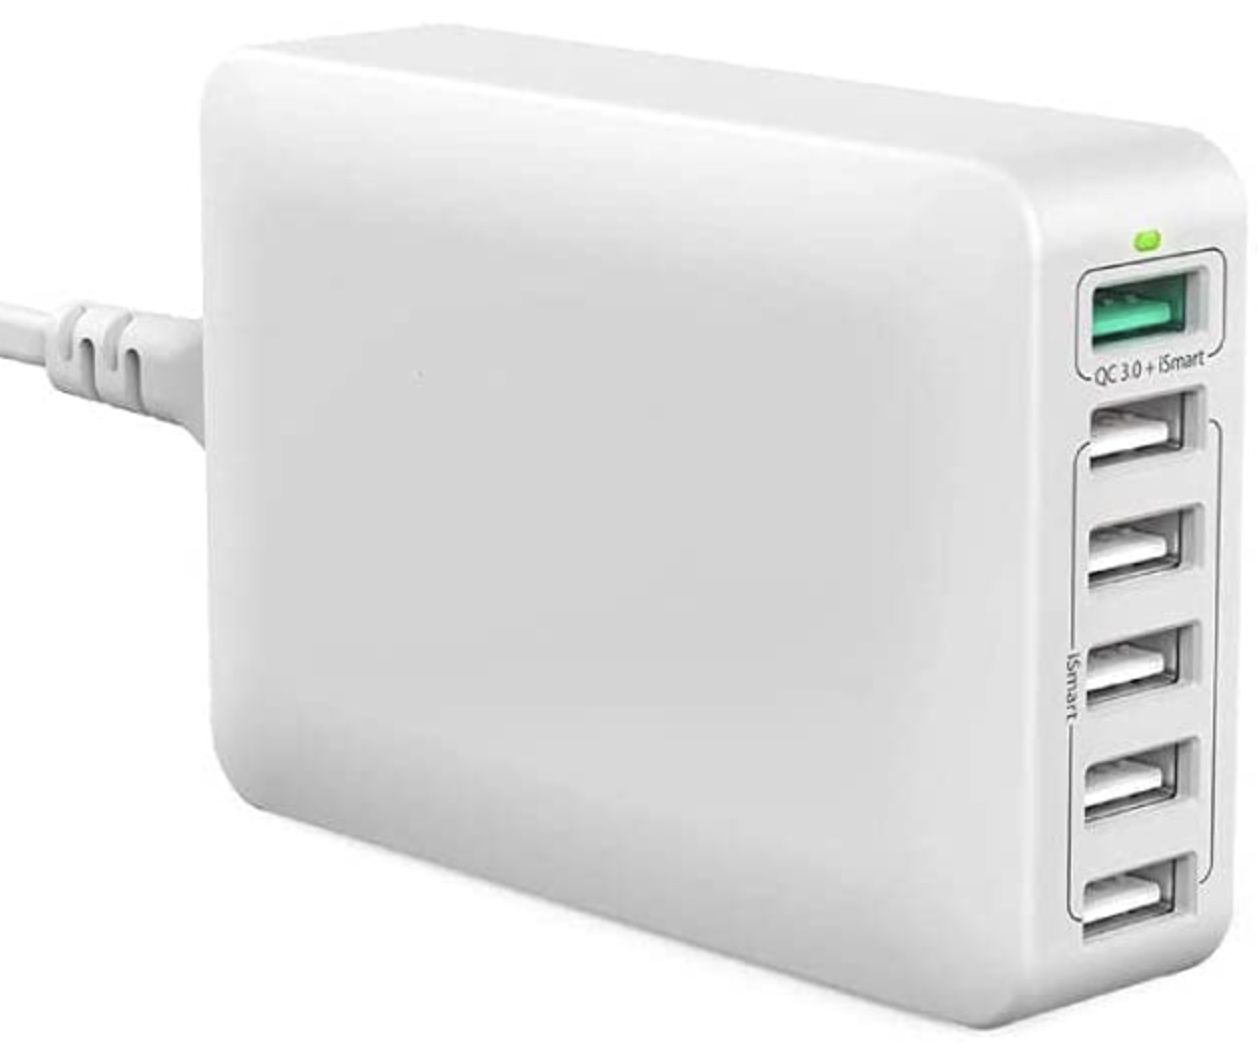 LOFIR USB 60W Ladegerät mit QC3.0 & 6 Ports für 13,49€ (statt 27€)   Prime